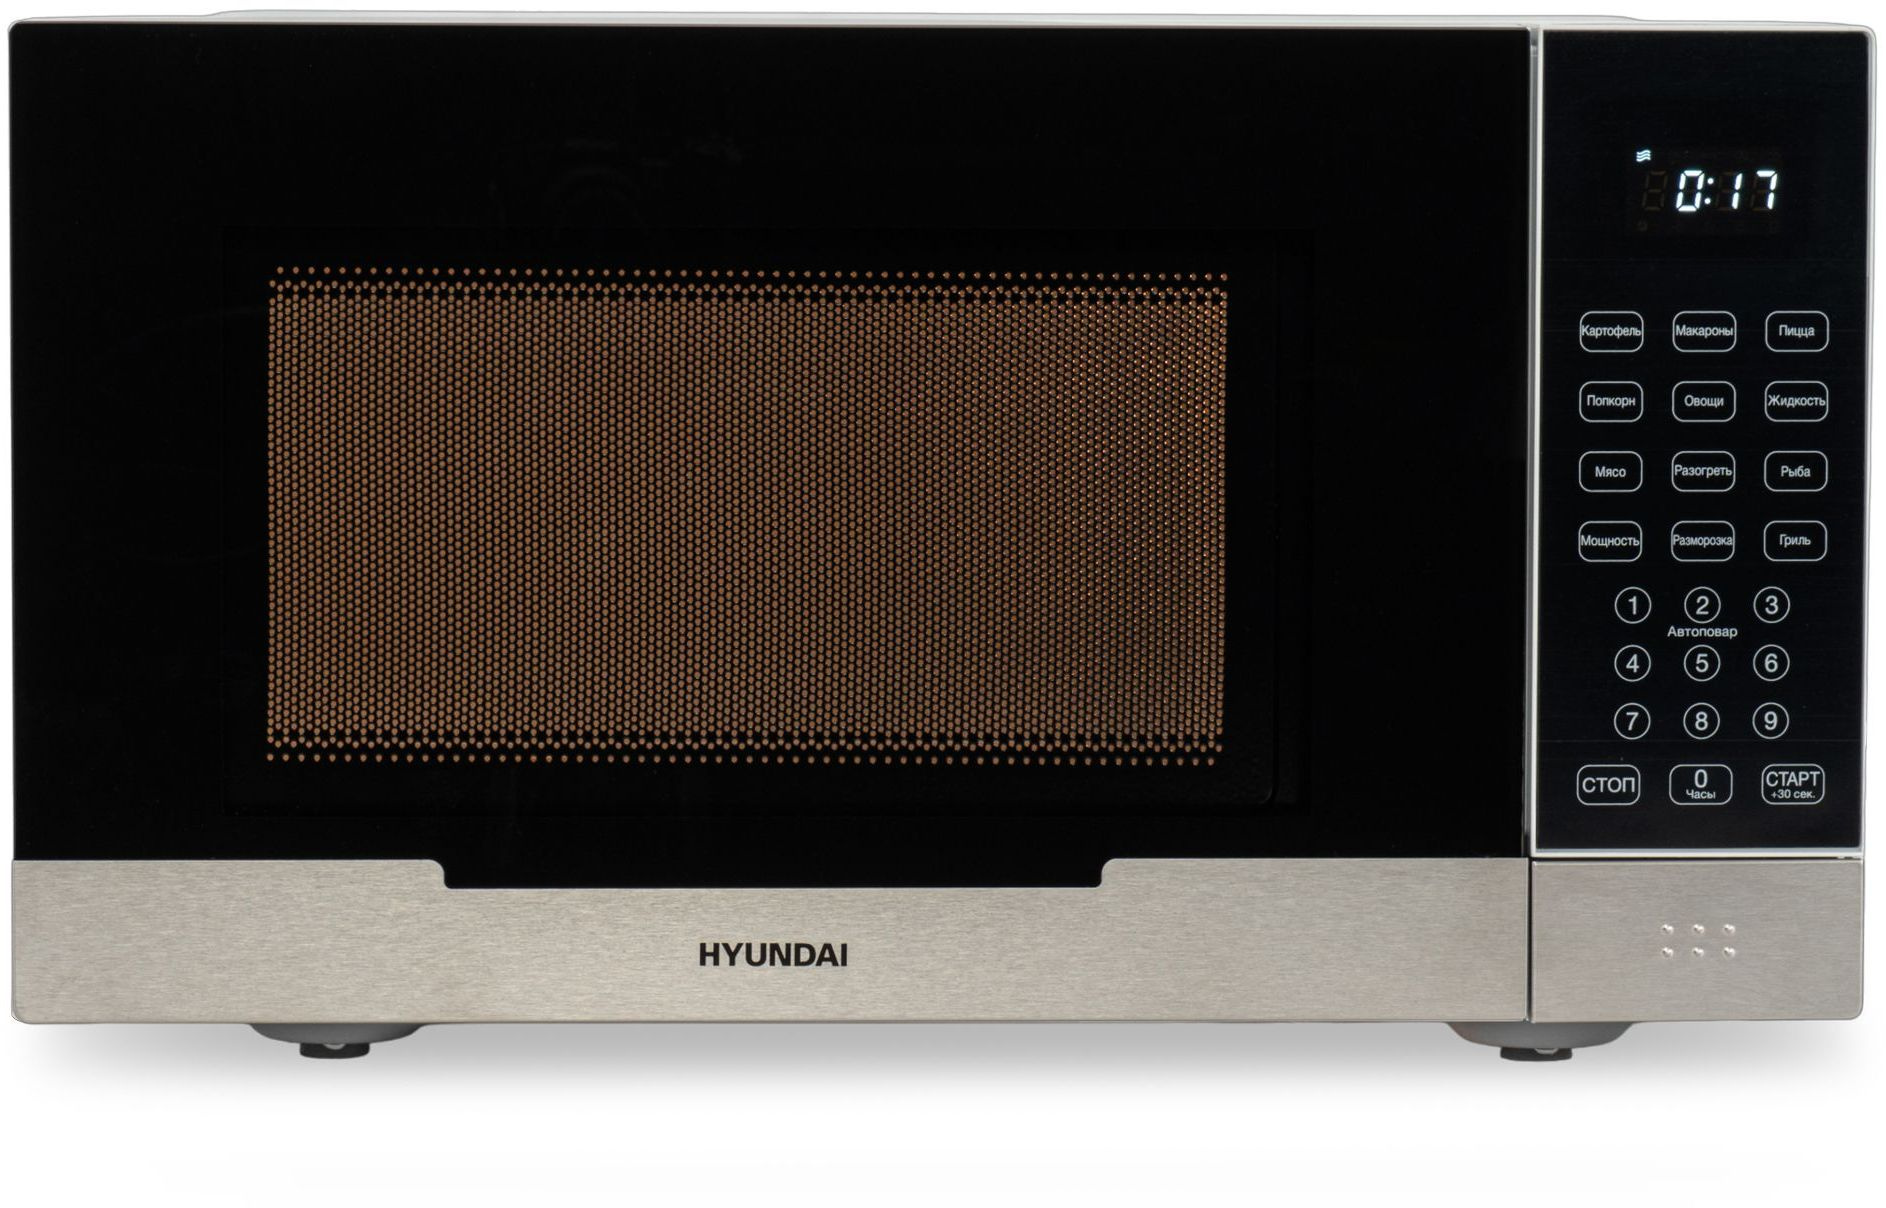 Микроволновая печь Hyundai HYM-D2075 23 л, 800 Вт, гриль, белый/металик (HYM-D2075)